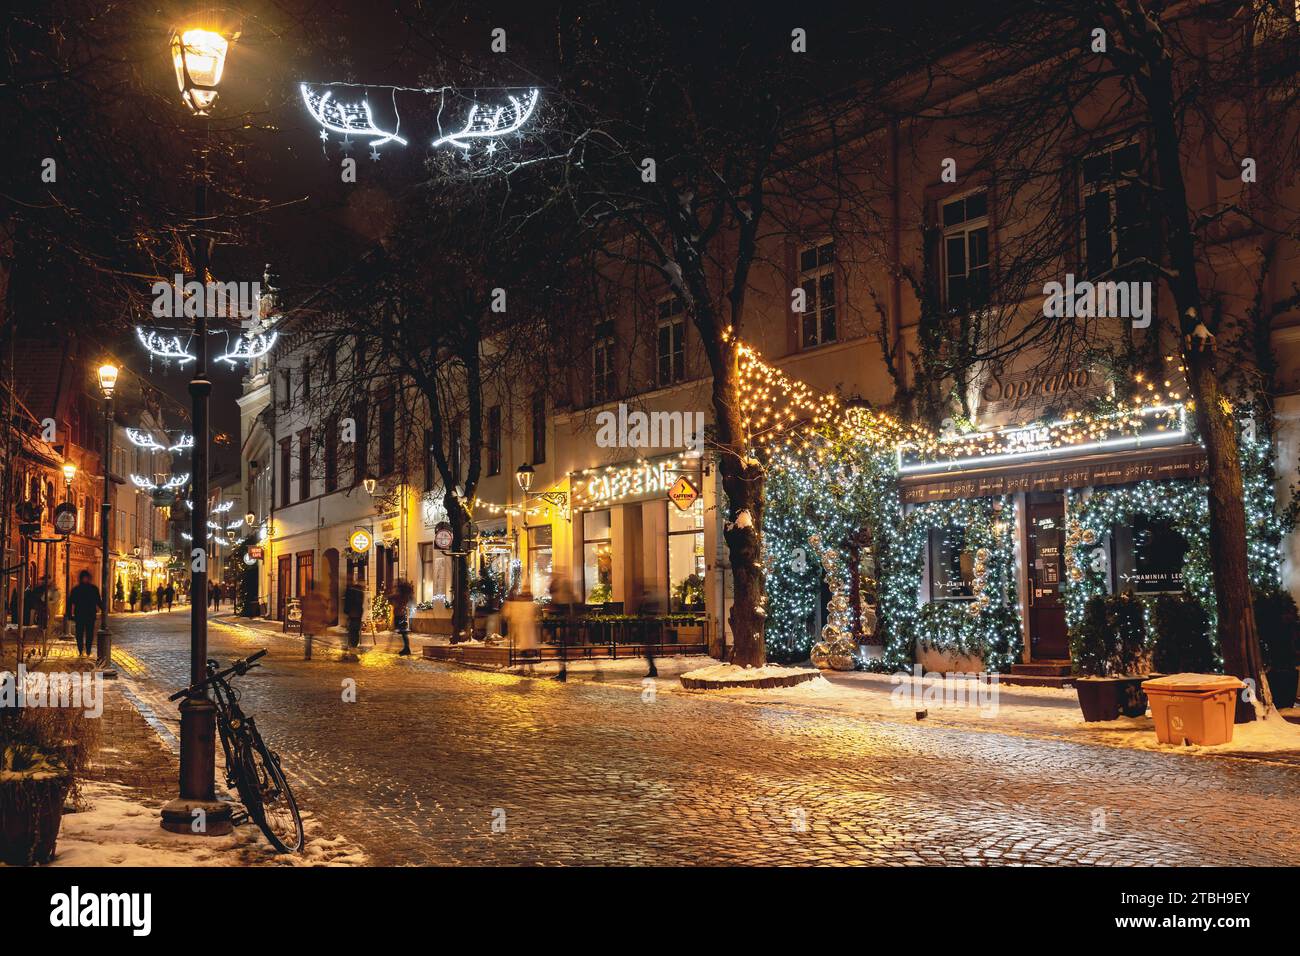 Wunderschöne gemütliche Weihnachtsdekoration, Kranz, Girlanden und Lichter in der Altstadt von Vilnius, Hauptstadt von Litauen, Europa, bei Nacht mit Straßenlaternen, Fahrrad Stockfoto